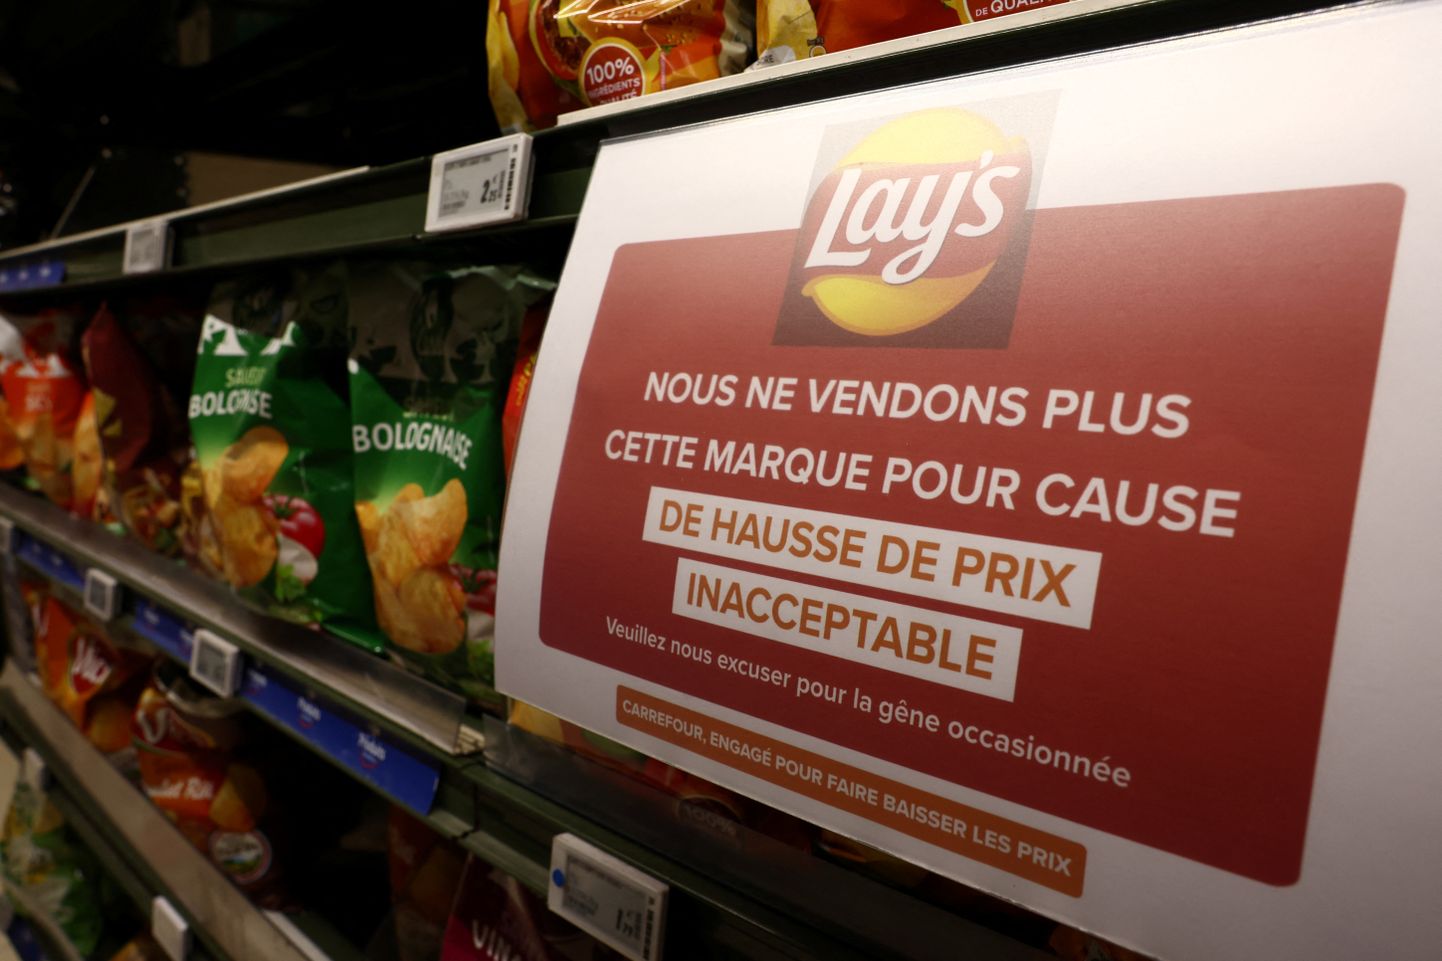 Paziņojums "Carrefour" veikalā, ka Lay's Čipsi netiks tirgoti nepieņemami augstās cenas dēļ